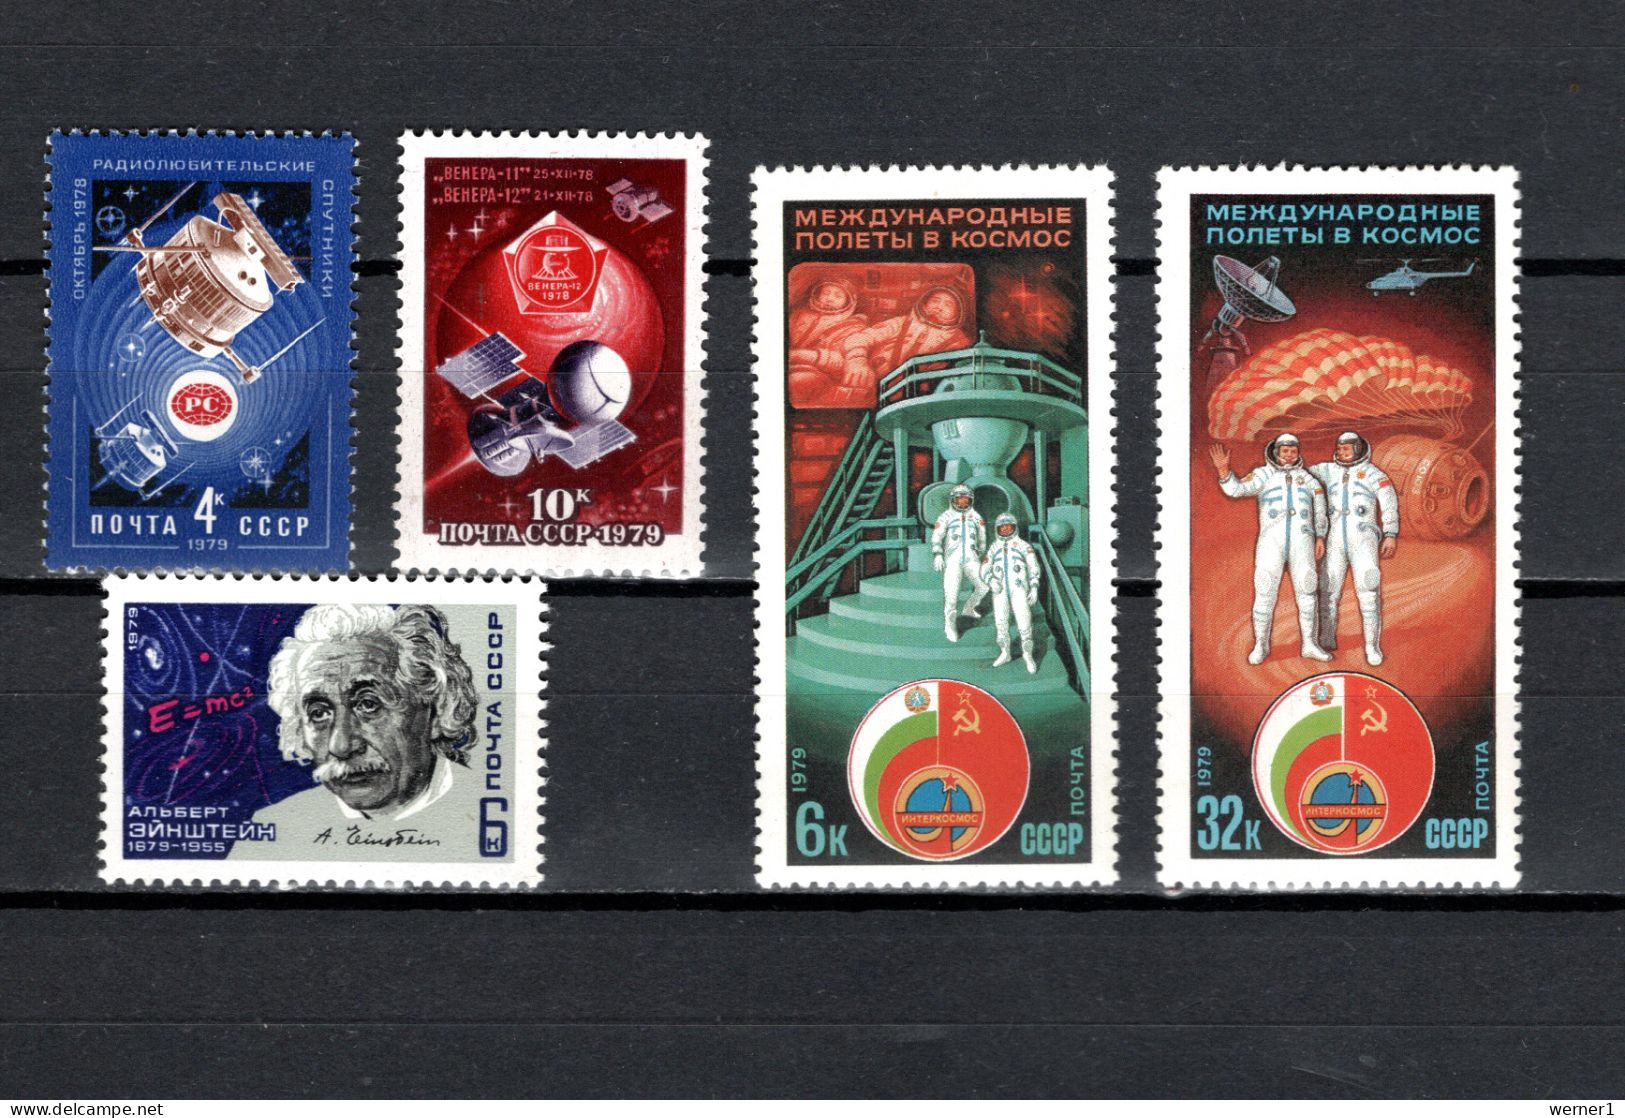 USSR Russia 1979 Space, News Satellites, Venus, Albert Einstein, Interkosmos 5 Stamps MNH - Russia & URSS